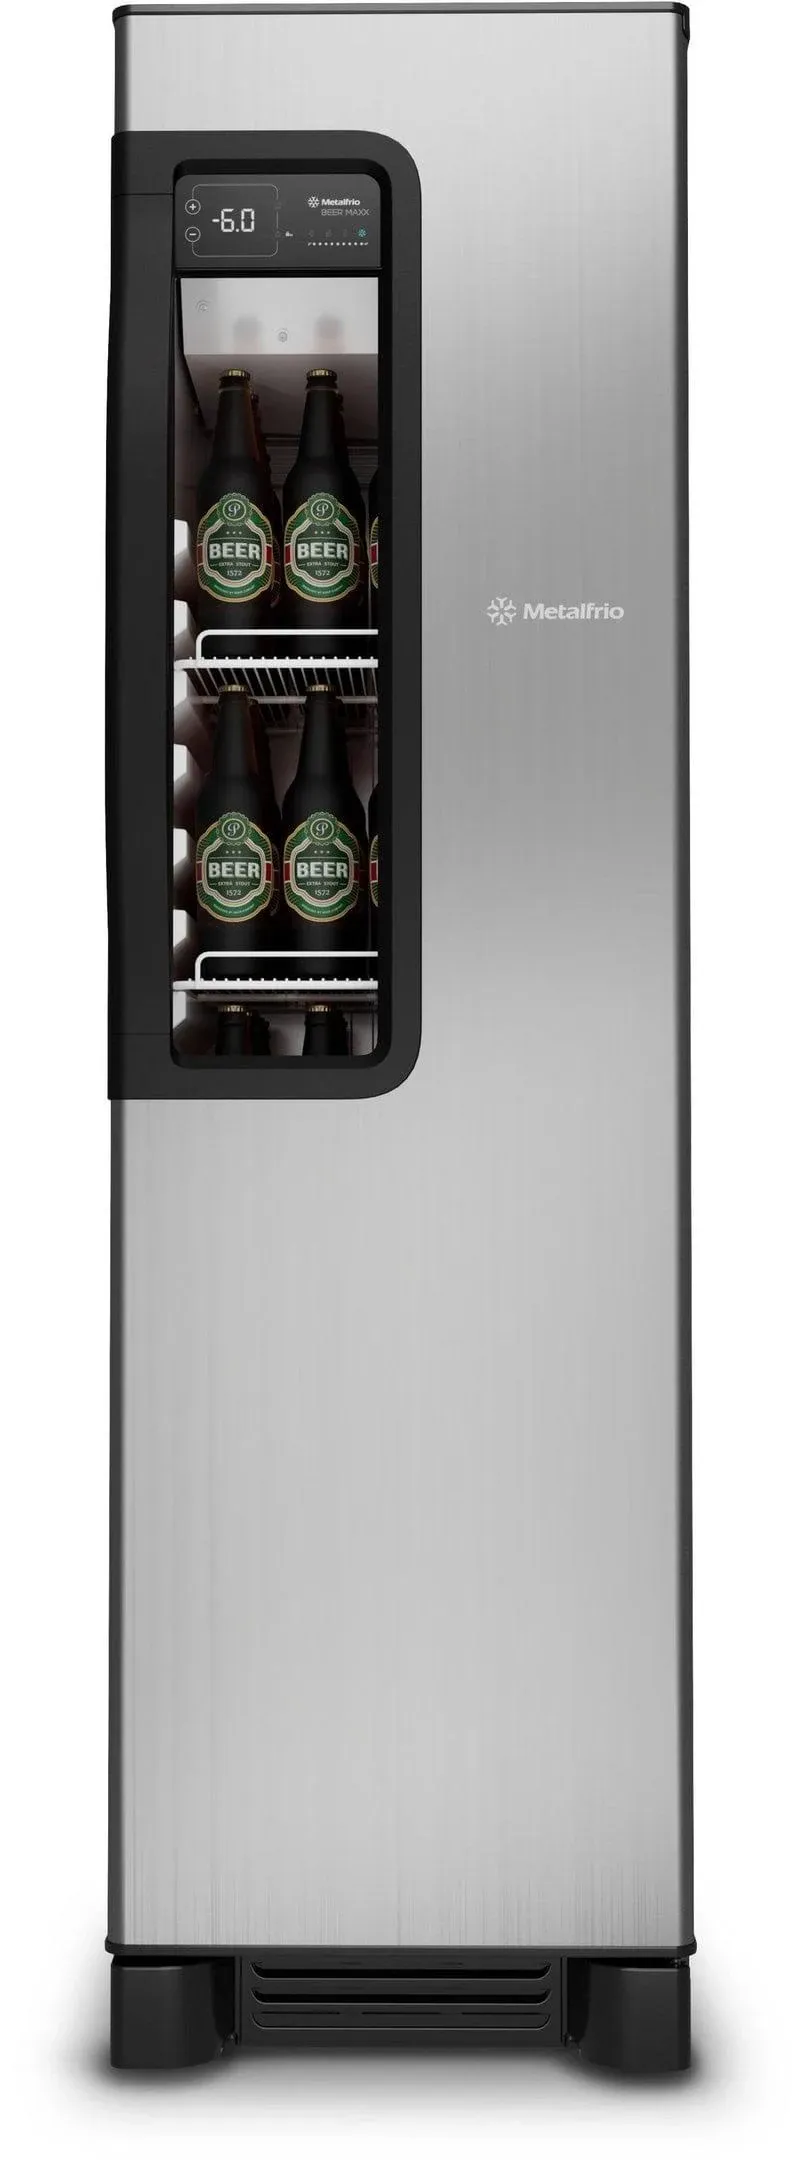 Imagem do produto Beer Maxx 300 Cervejeira Inox (Vn28tp) 324 Litros - Metalfrio